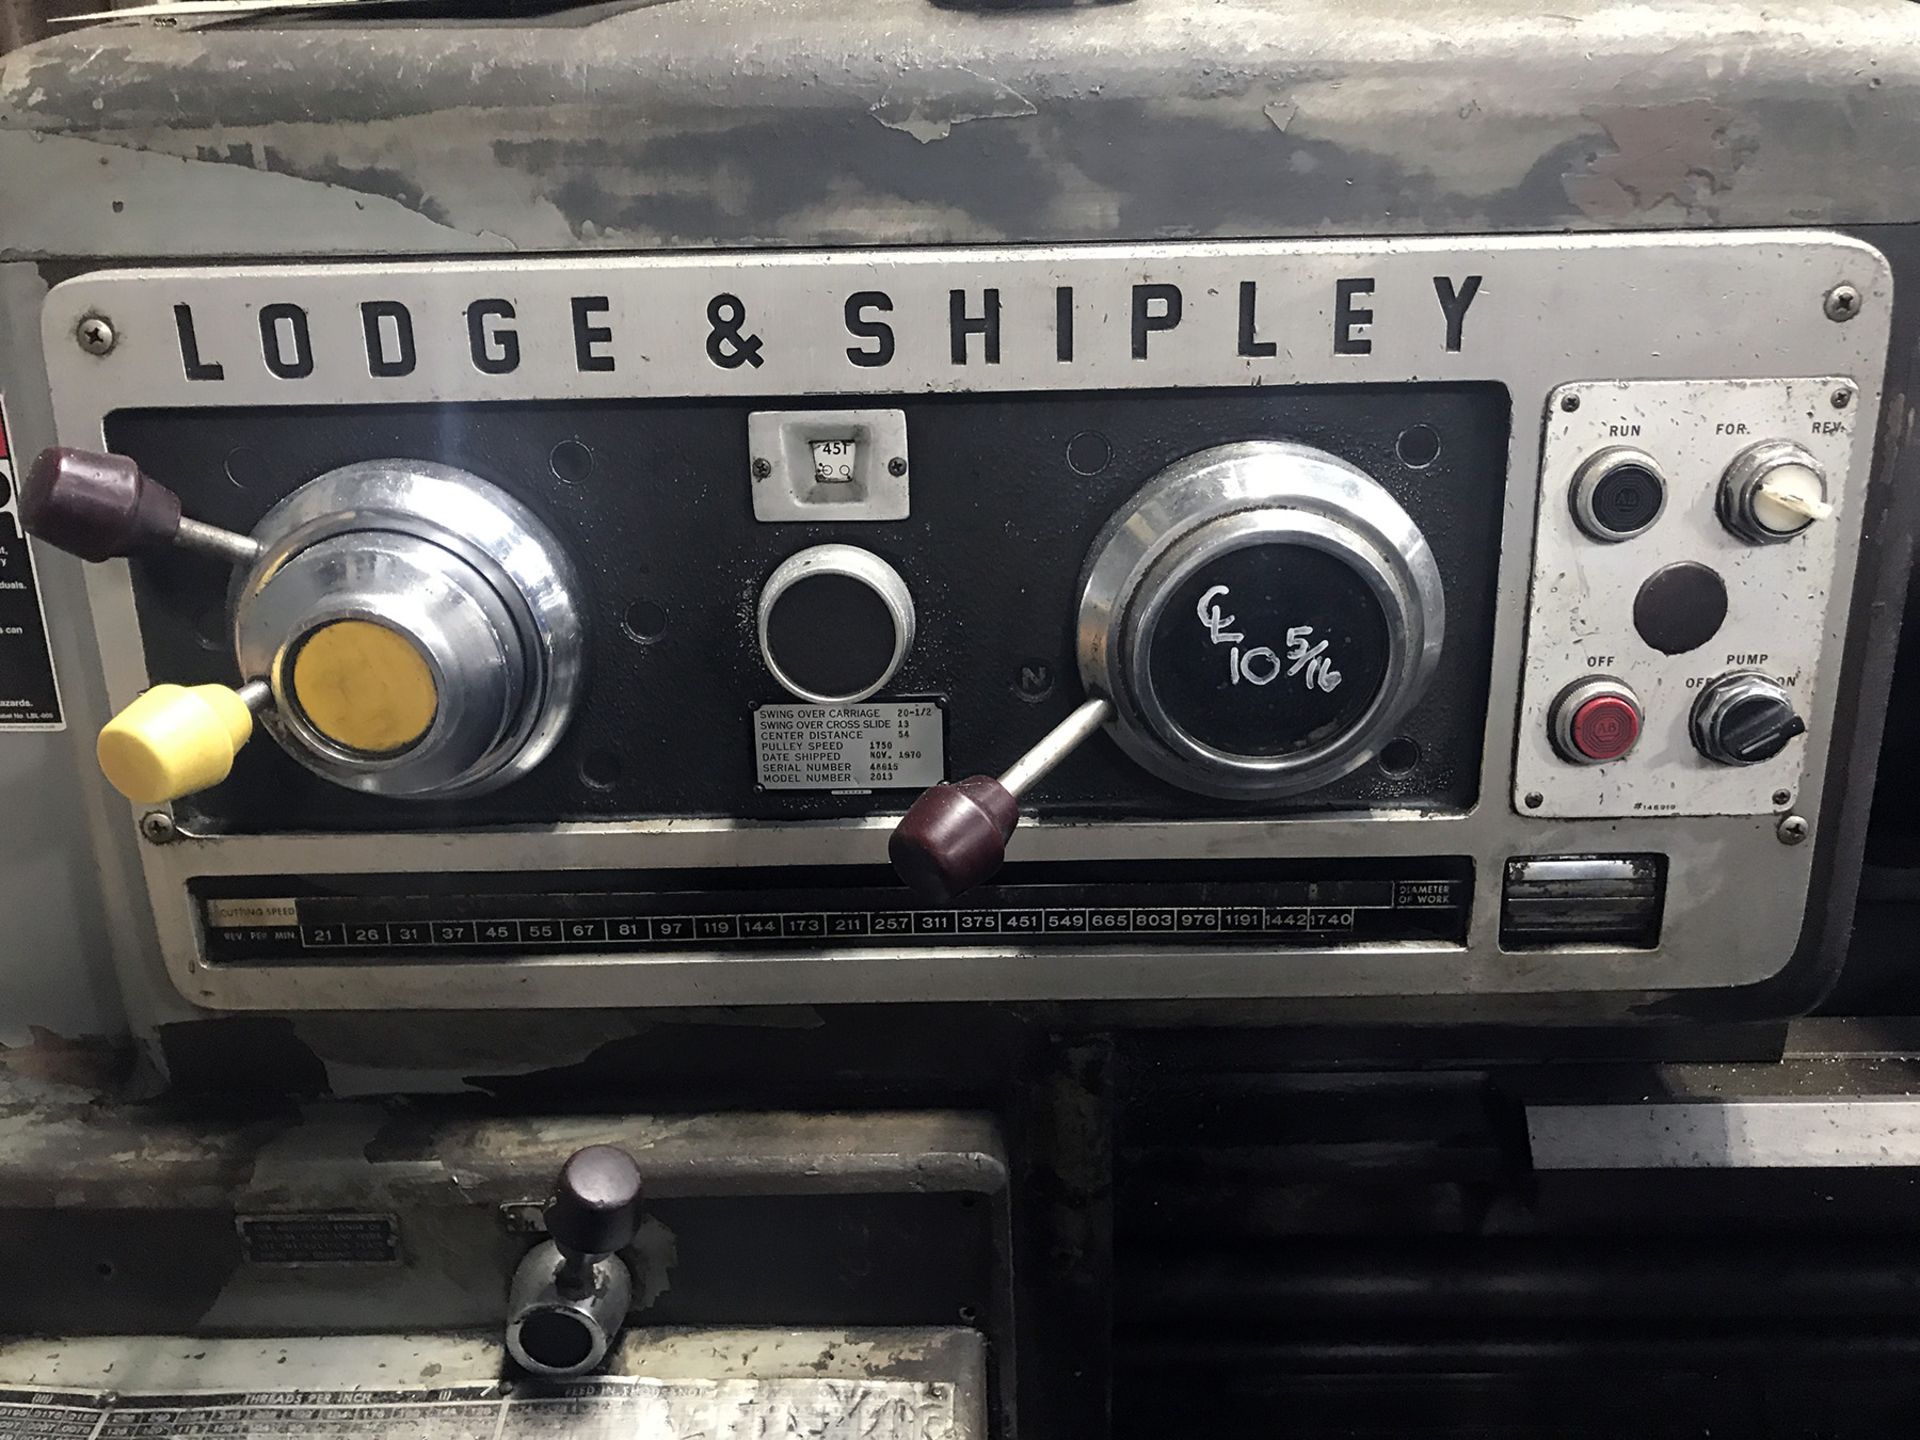 20"/13" x 54" Lodge & Shipley Engine Lathe - Image 7 of 7